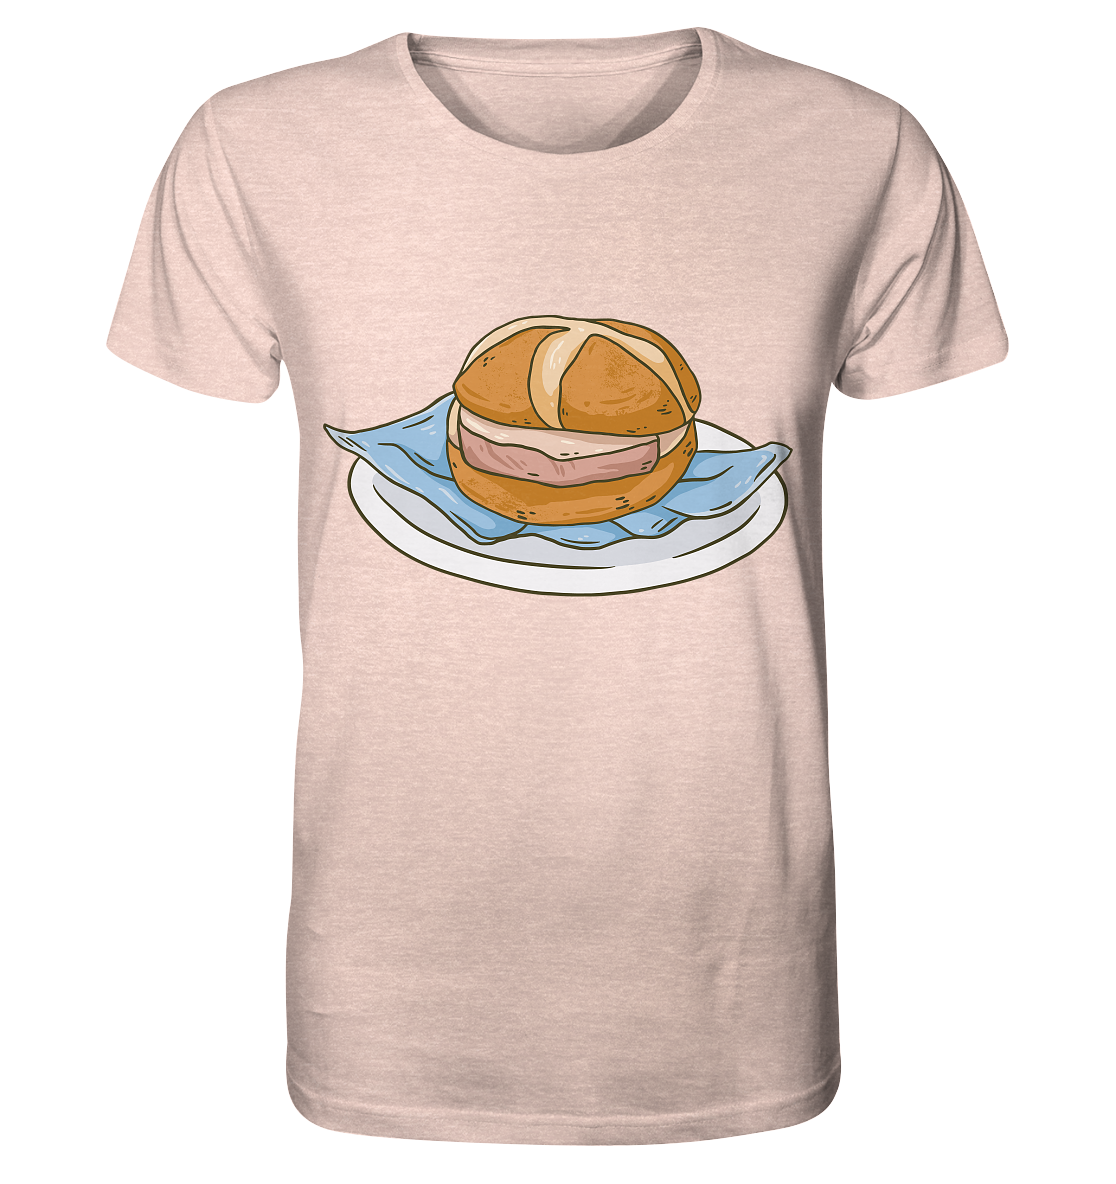 A Lebakassemme, A Leberkäse roll - Organic Shirt (mottled)